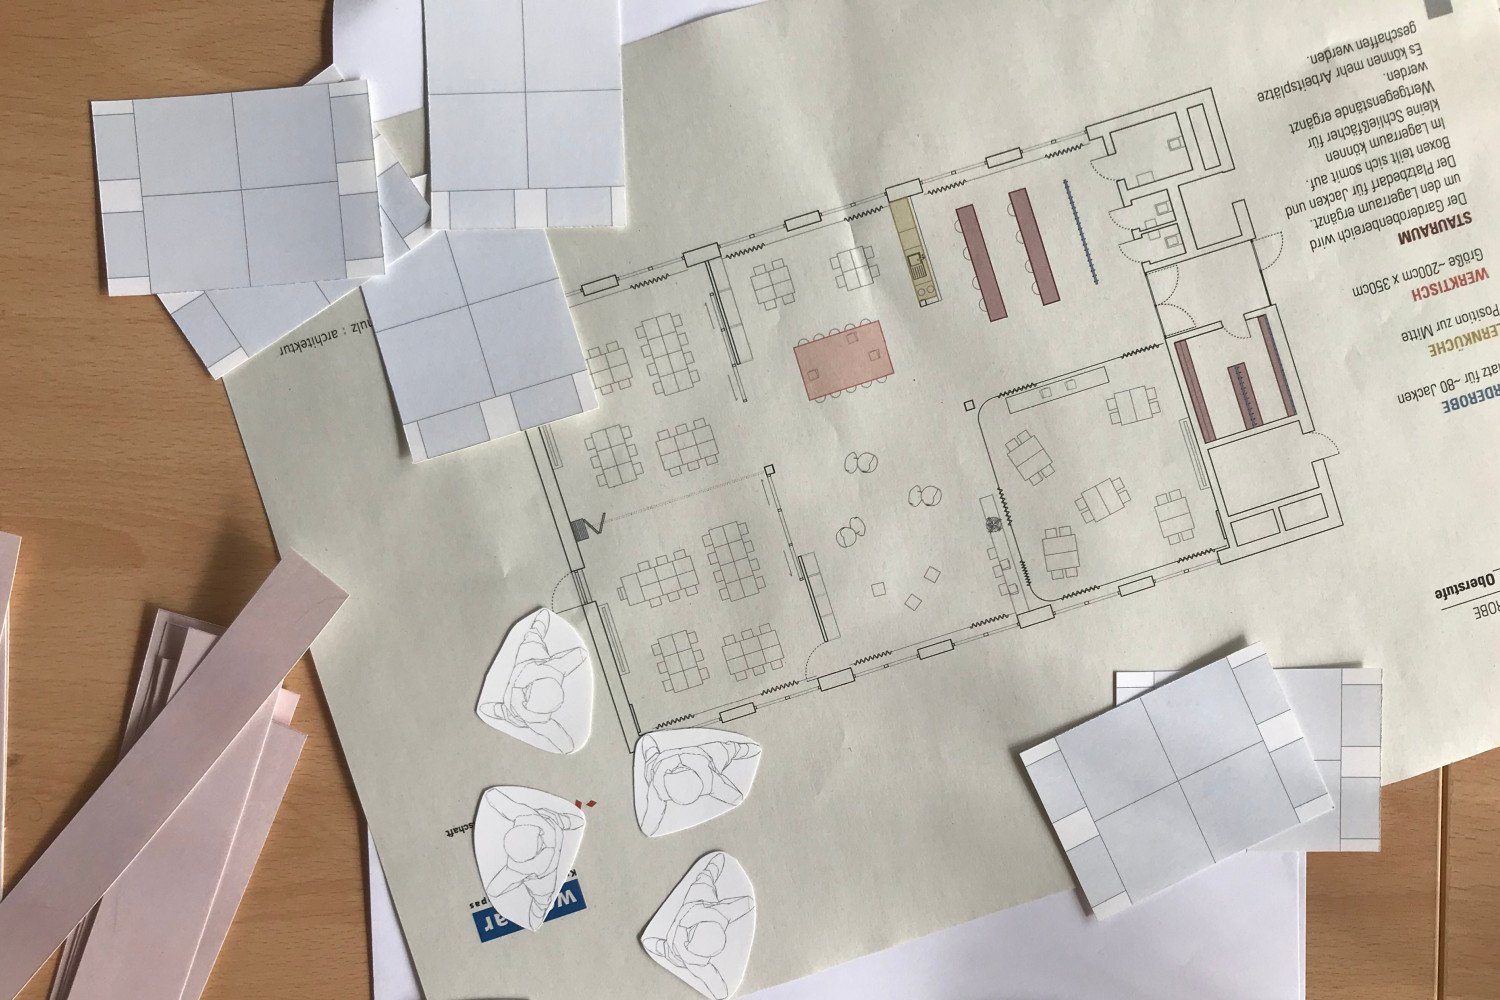 Papierausdruck eines Lernloft-Grundrisses und weiteres Papiermaterial auf einer Tischplatte.